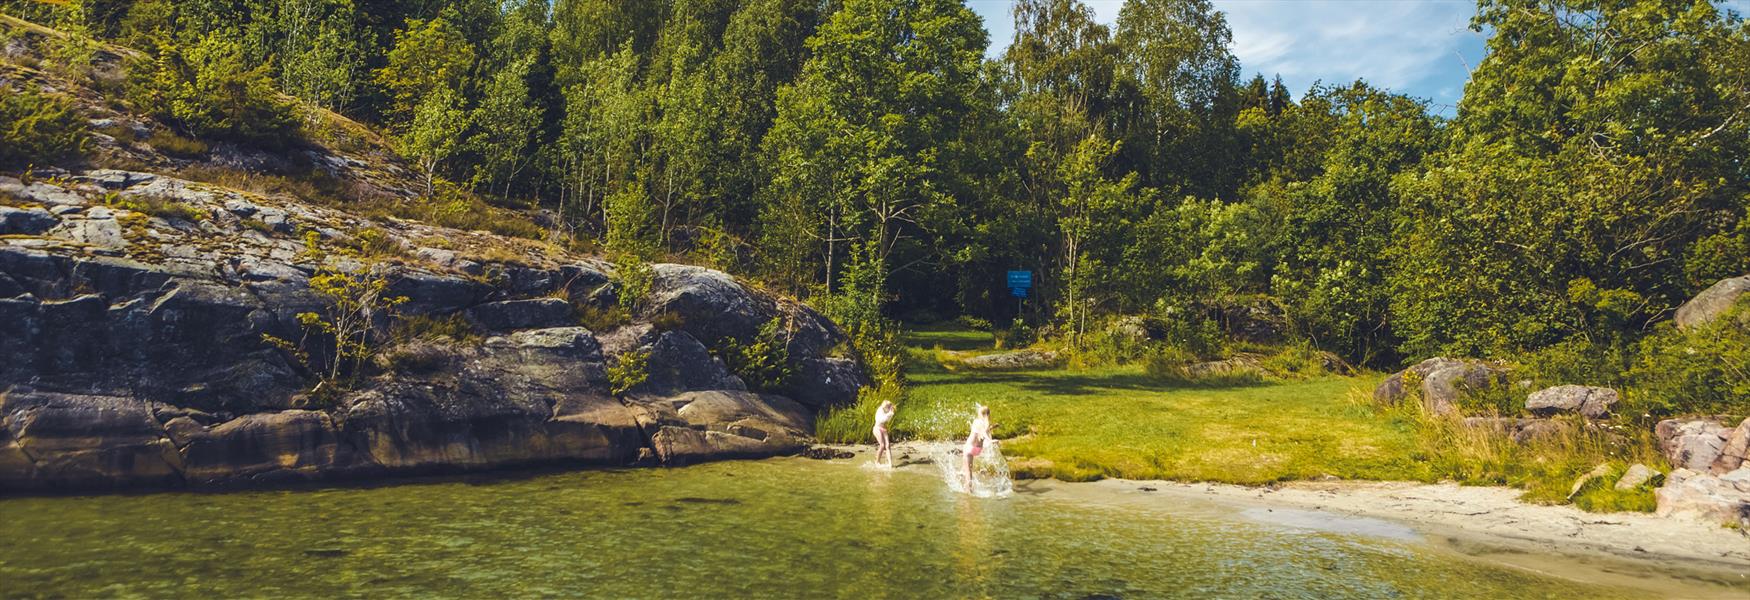 2 jenter som bader på en strand ved Telemarkskysten